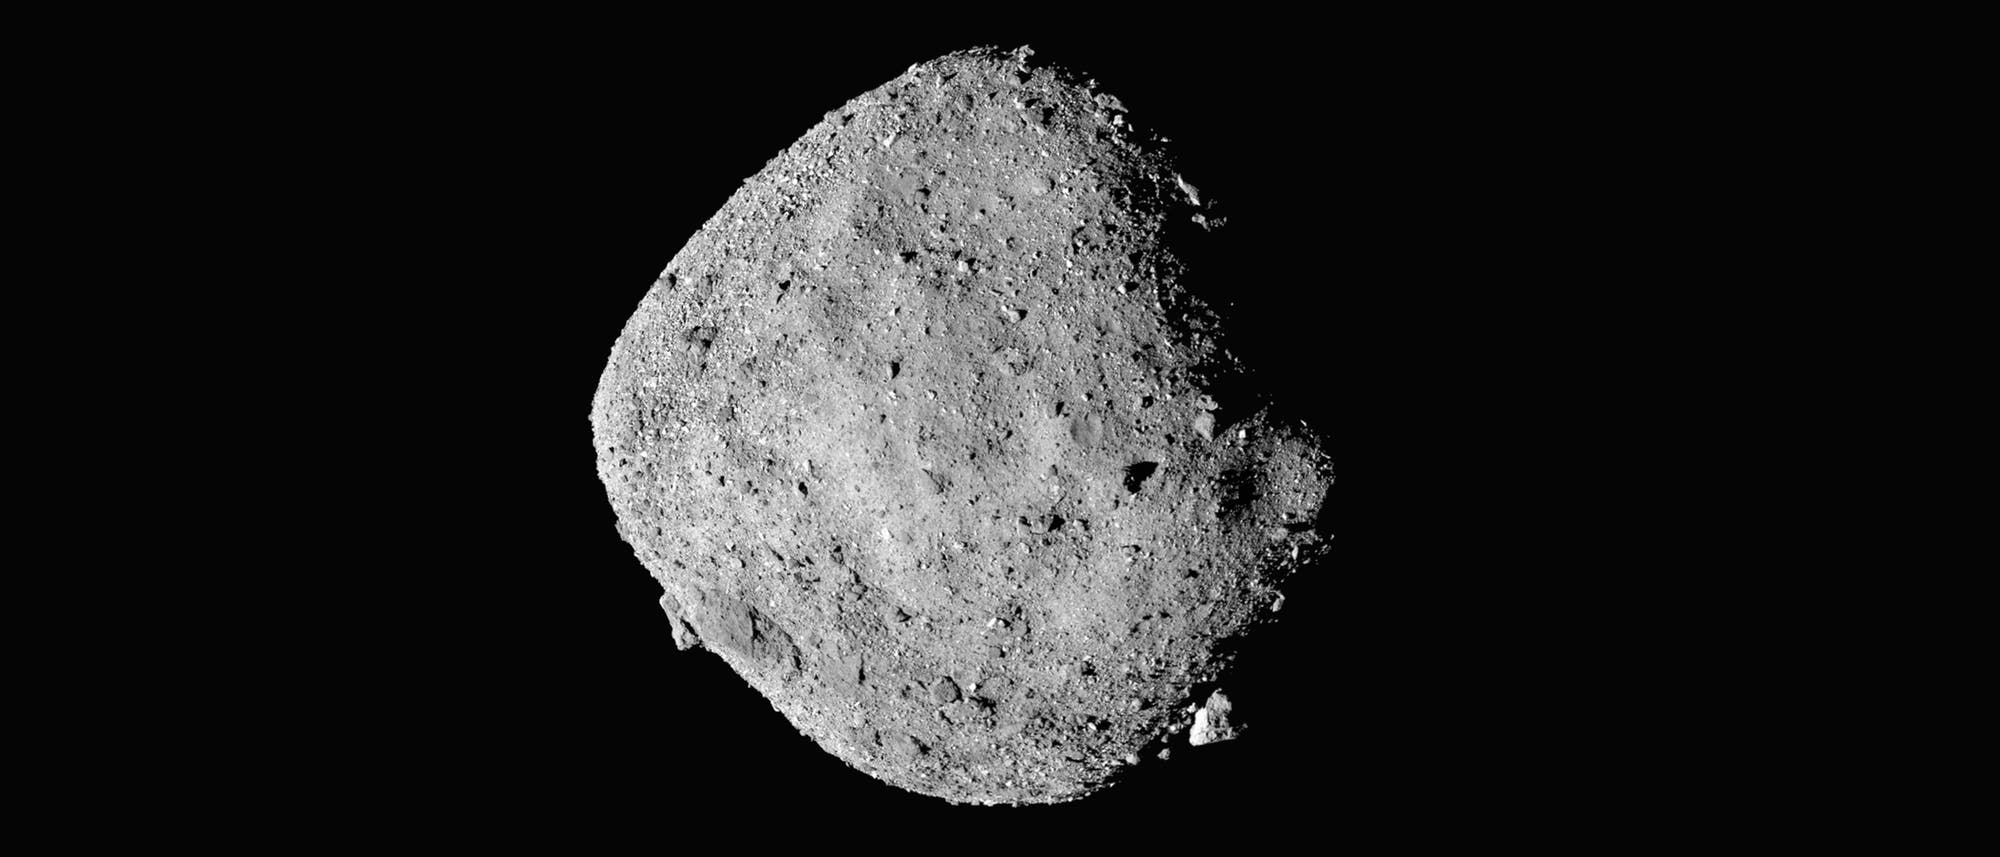 Asteroid Bennu im Blick von der Raumsonde OSIRIS-REx